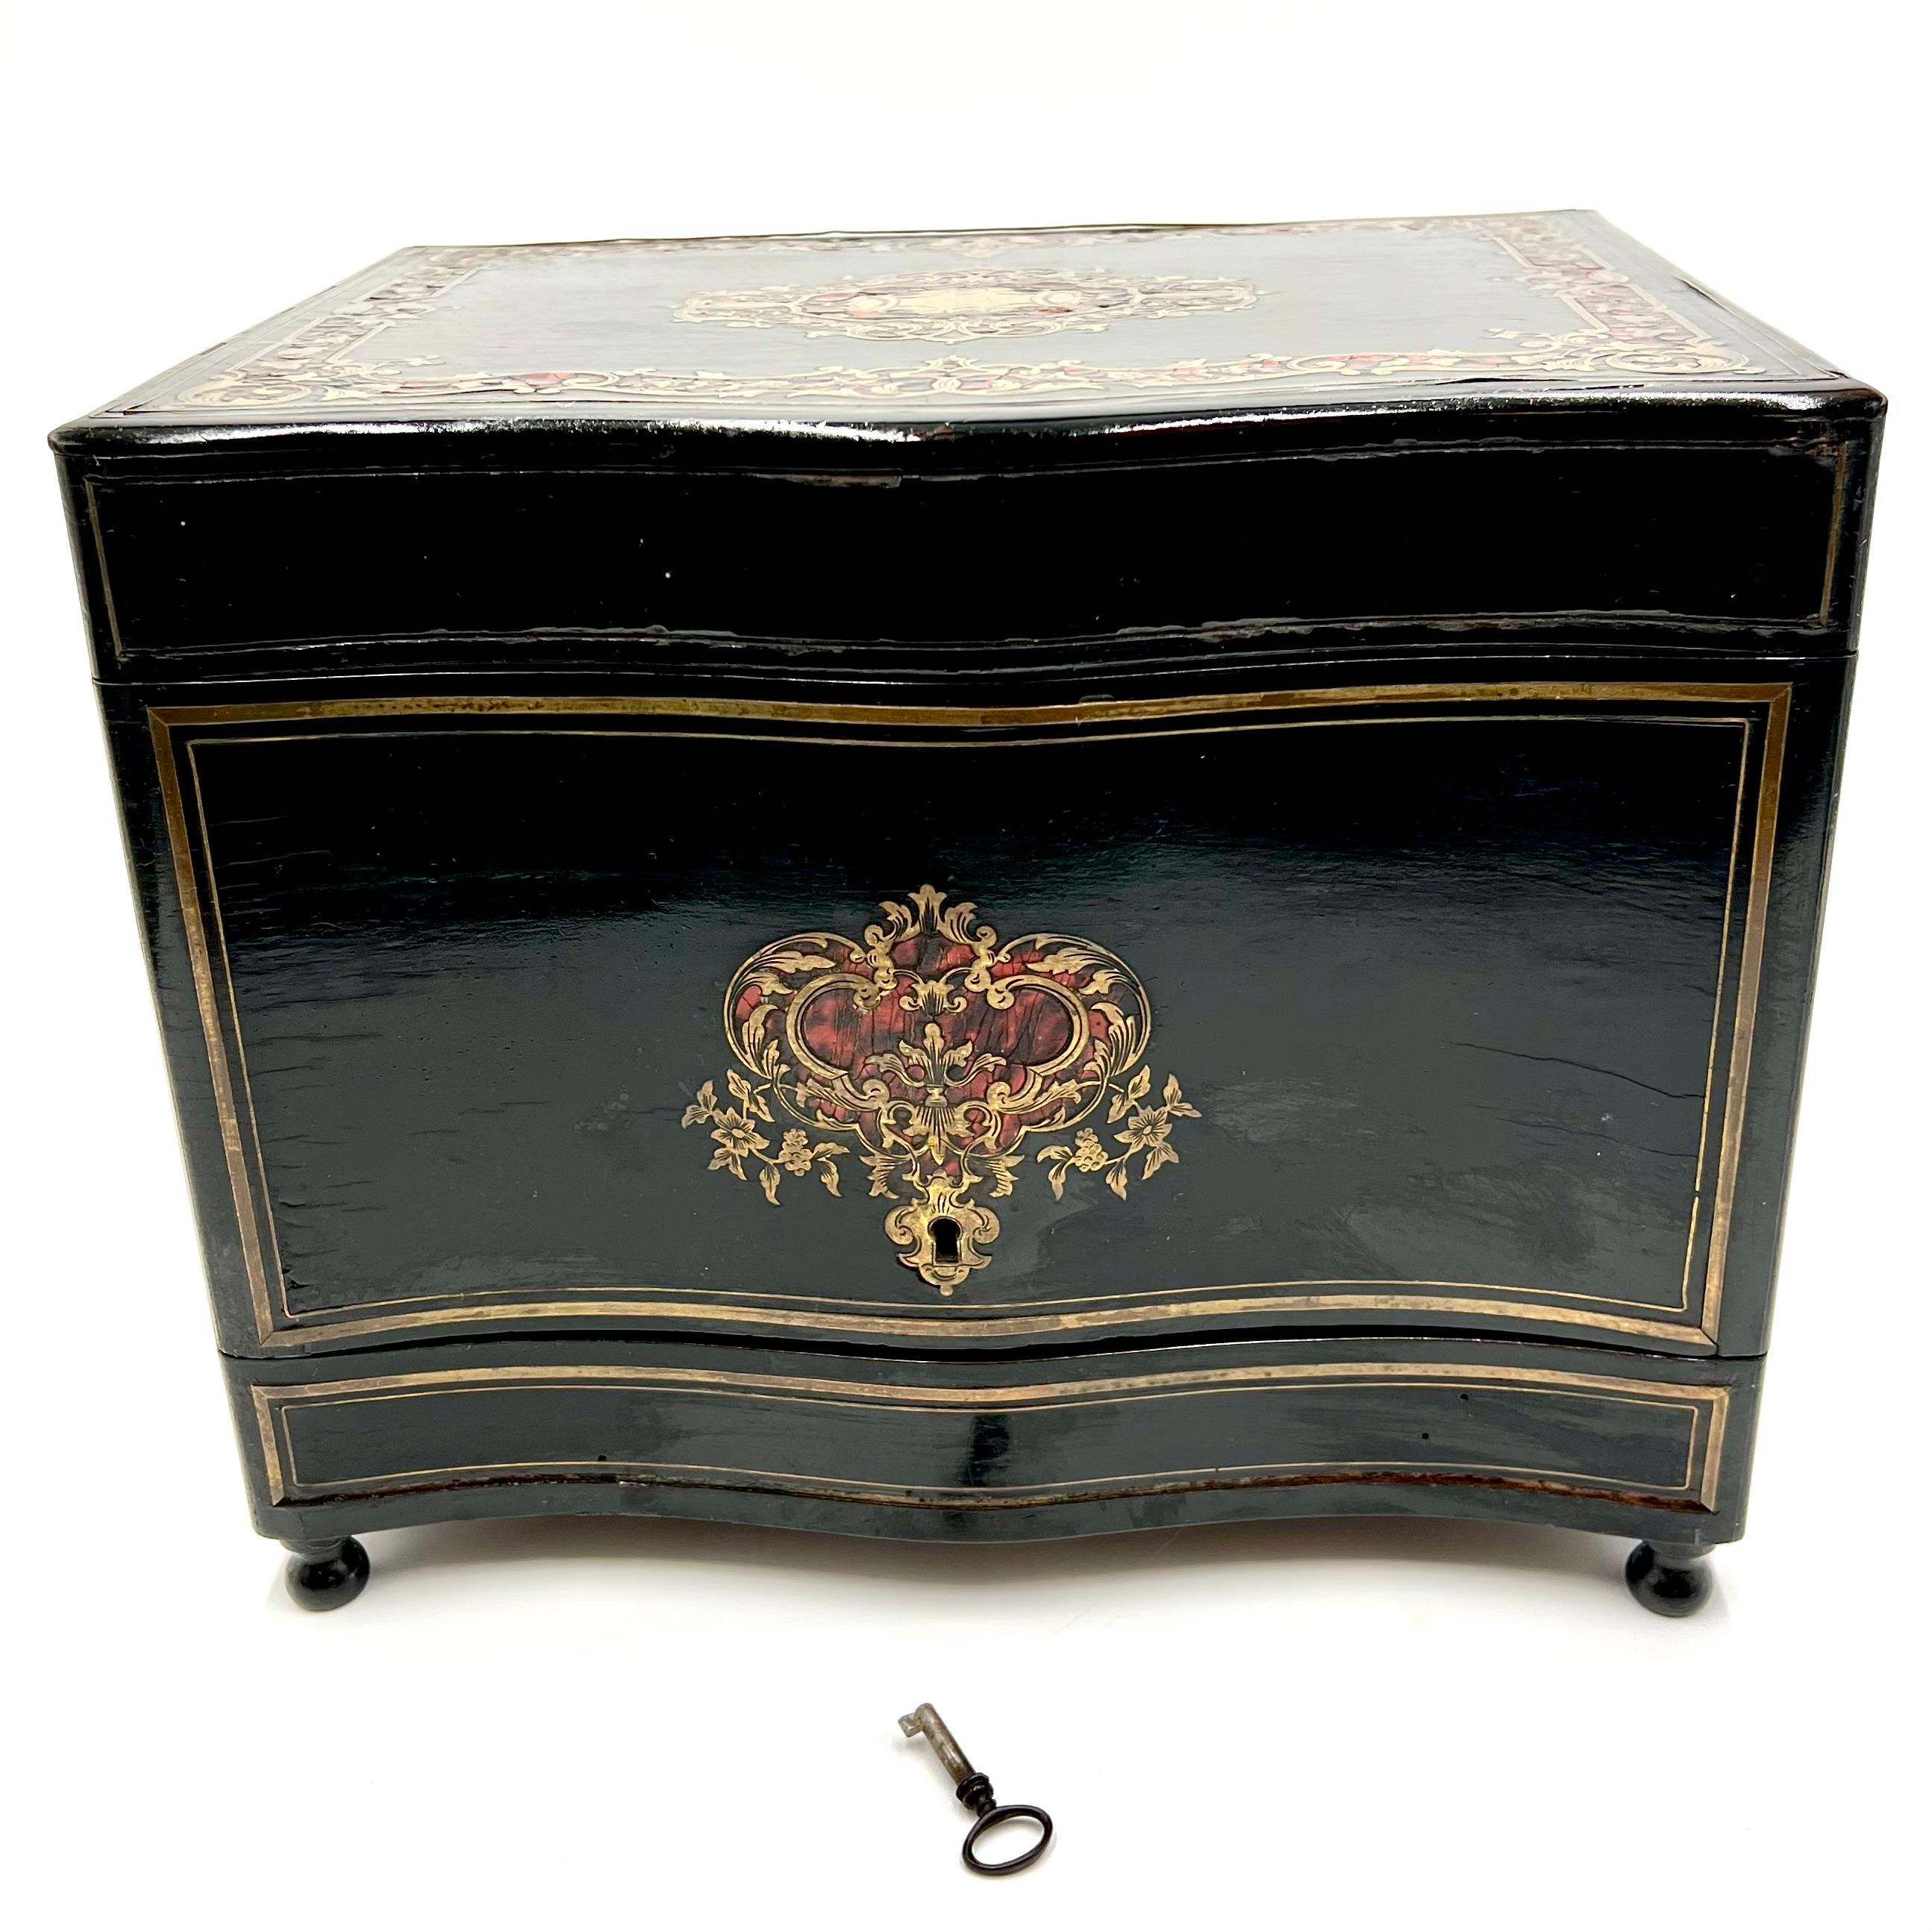 Wir präsentieren einen exquisiten antiken französischen Tantalus-Schrank, der Sie in die Eleganz der mittleren bis späten 1800er Jahre zurückversetzt. Dieses bemerkenswerte Stück wurde im raffinierten Stil von Napoleon III. gefertigt und zeichnet